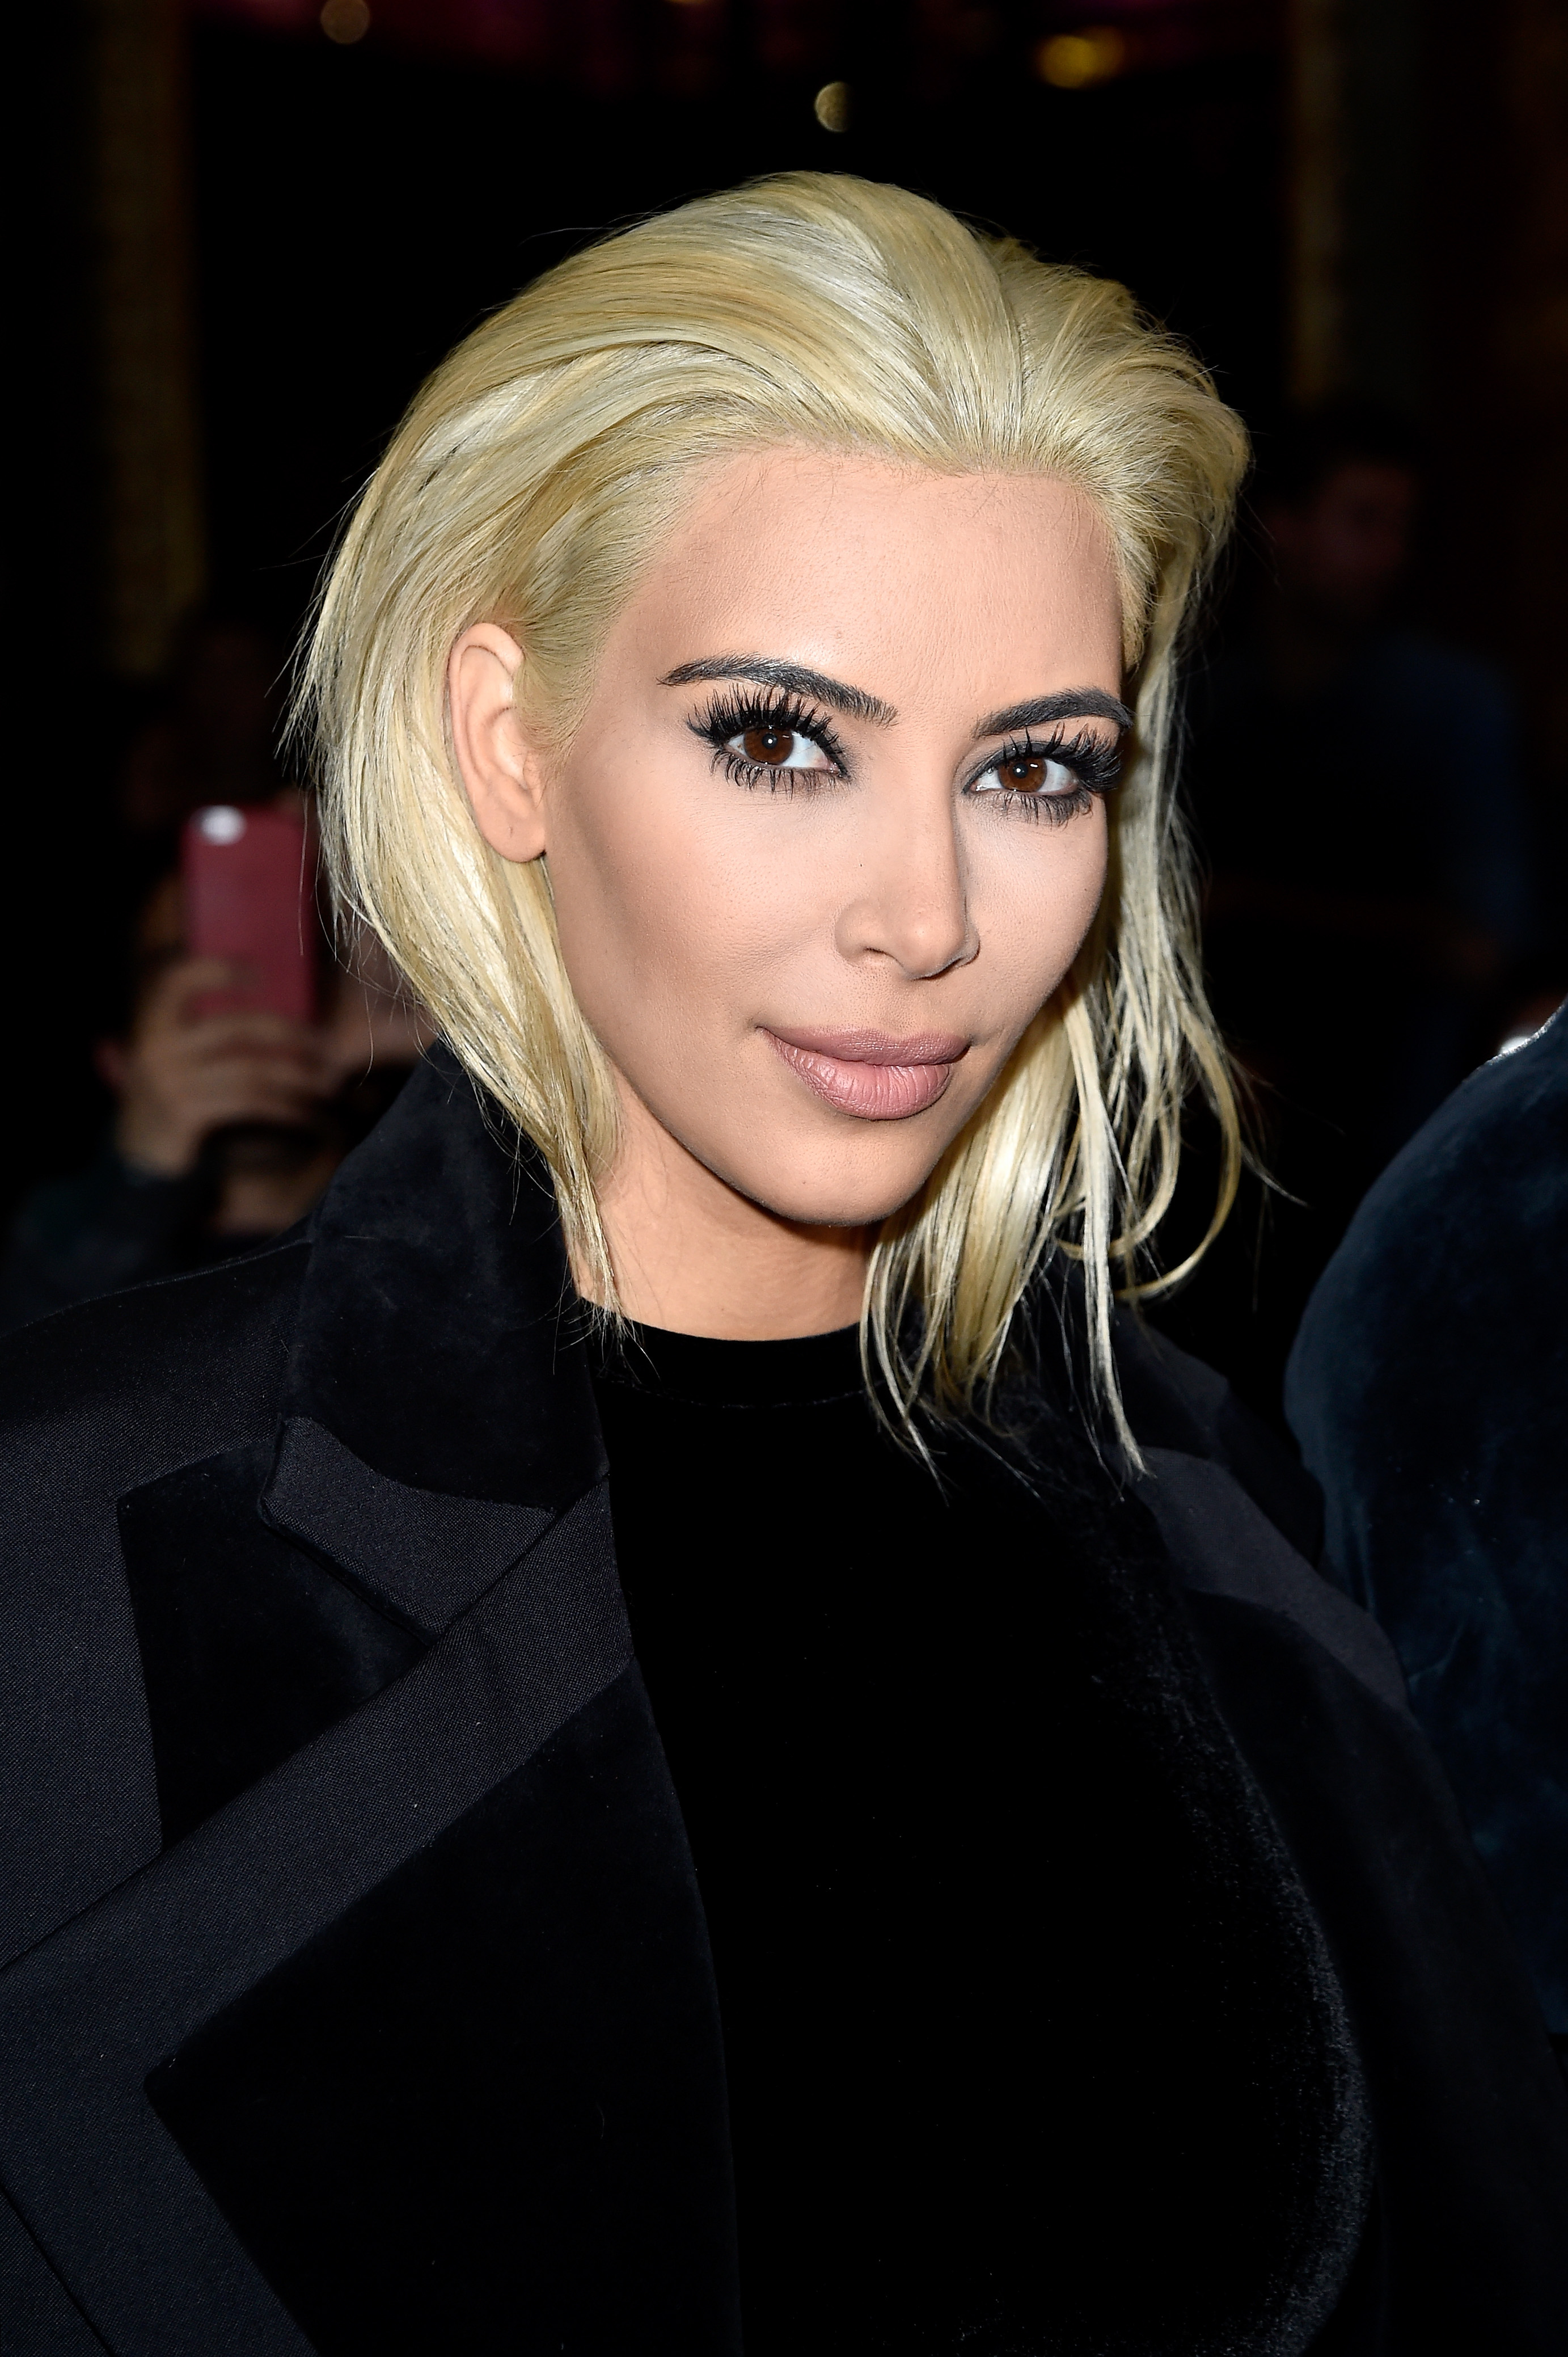 Kim Kardashian Dyes Hair Platinum Blonde: She Rebrands Her Hair | Time